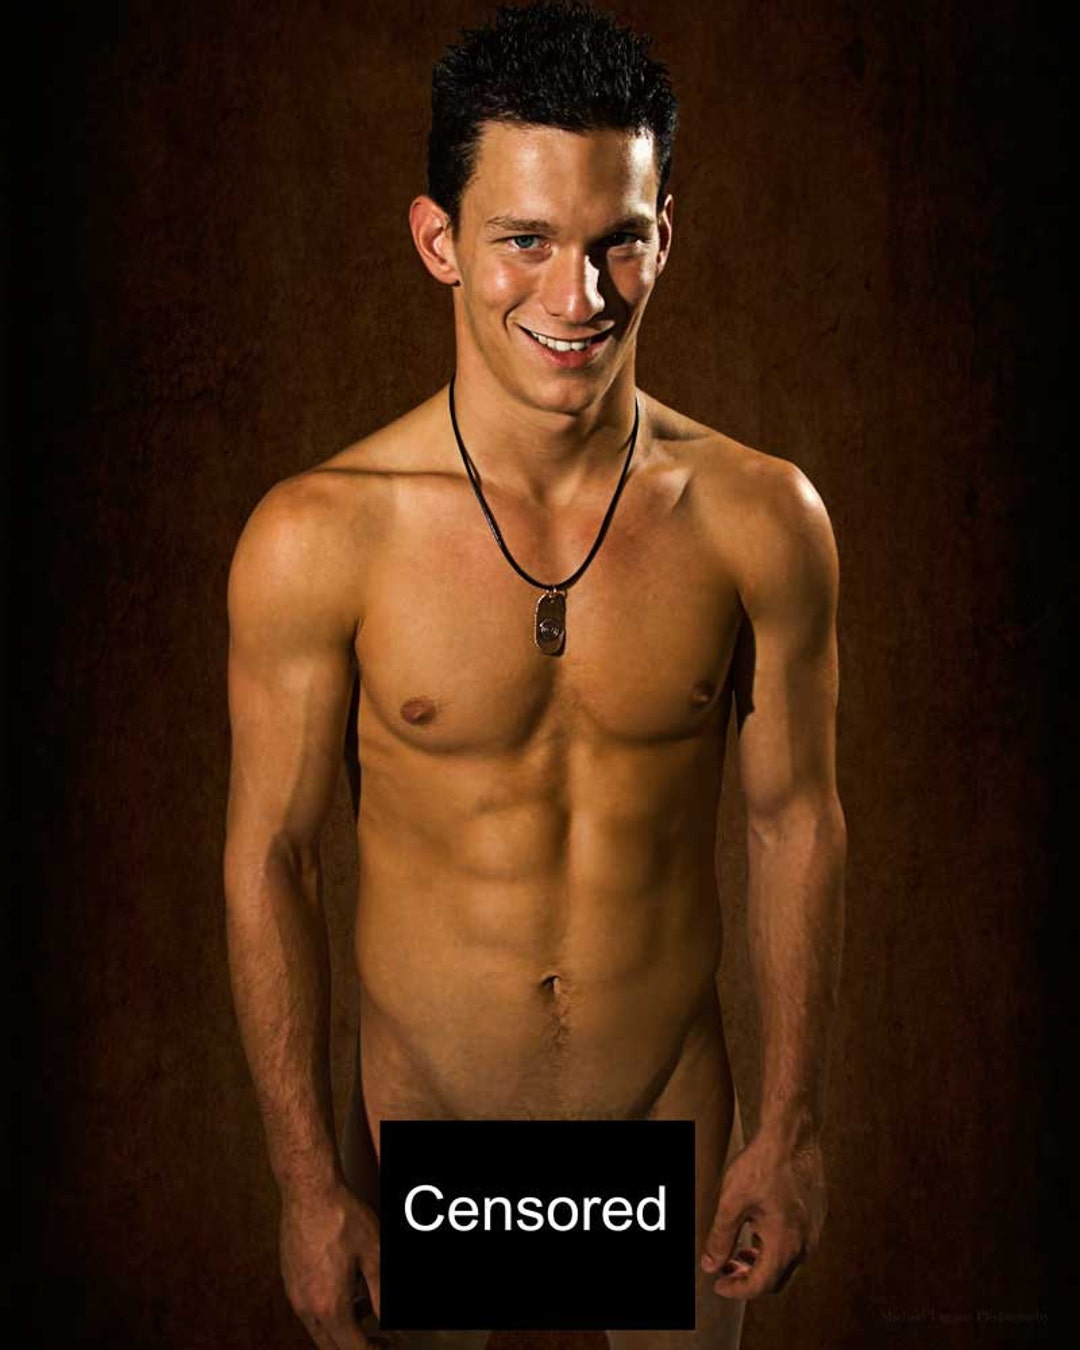 Nackt Mann lächelnd Gay Art männliche Art Nude Download JPG Foto